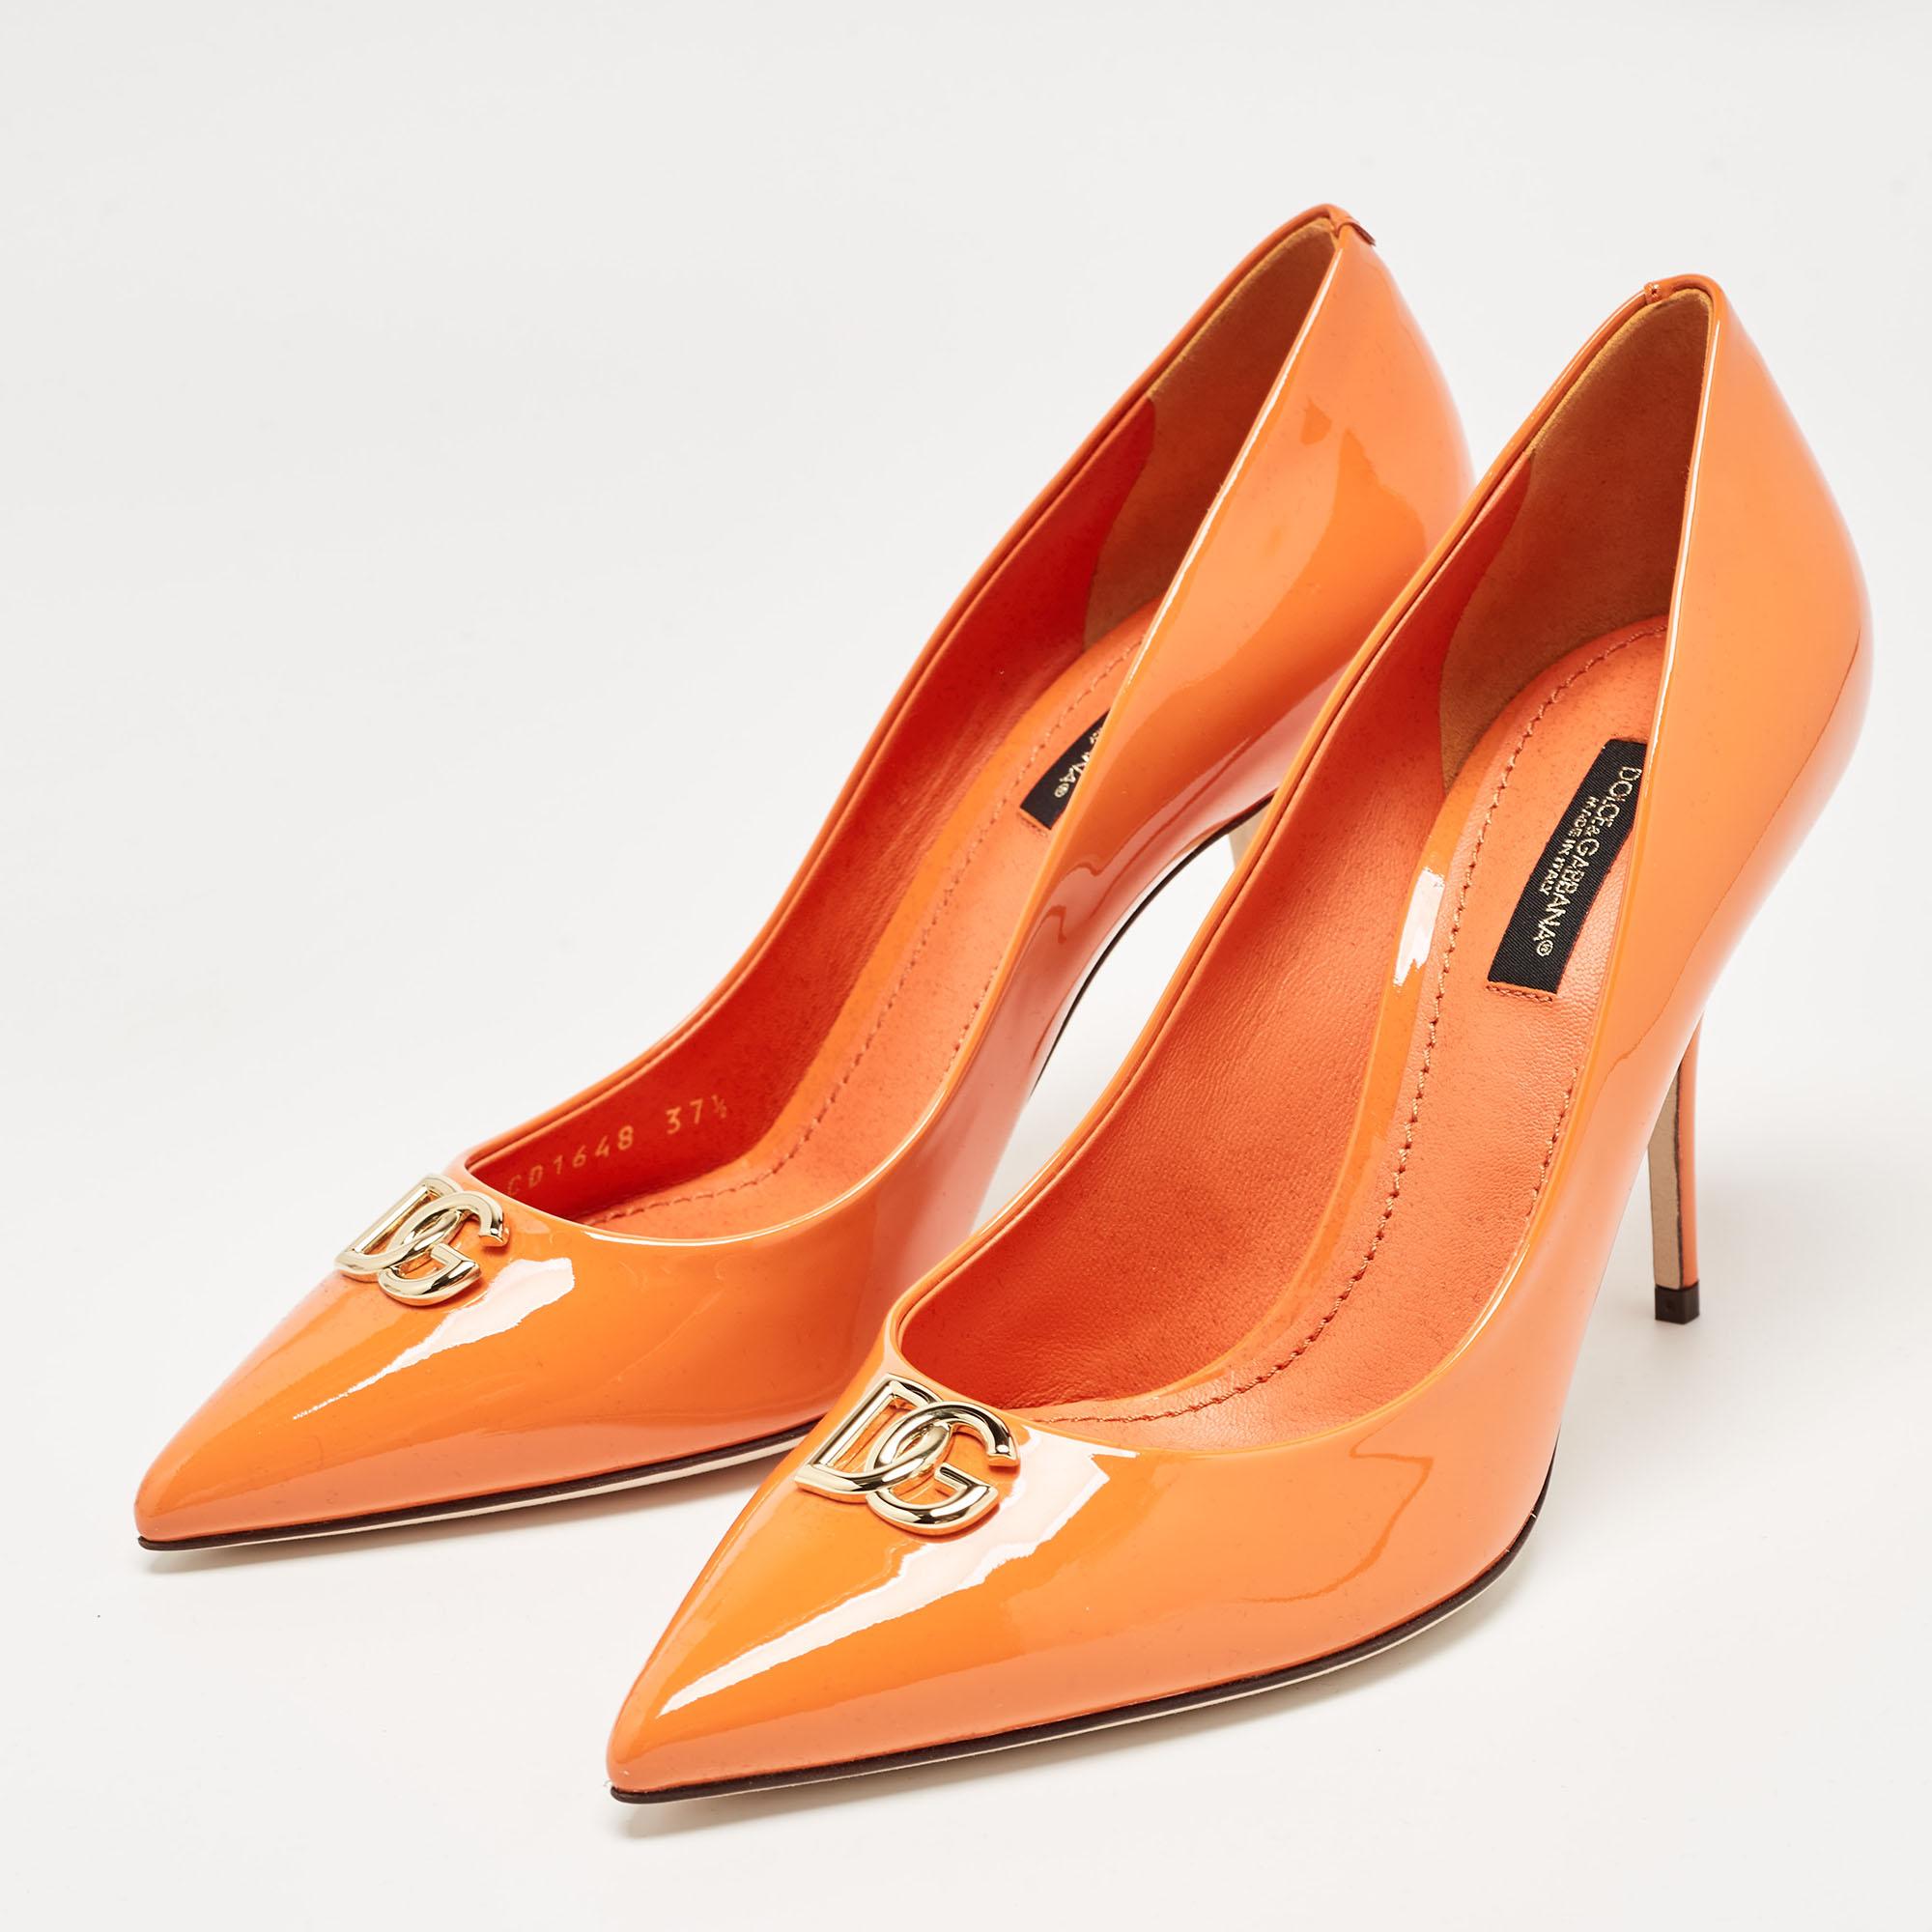 Escarpins Dolce & Gabbana orange verni avec boucle DG, taille 37,5 5